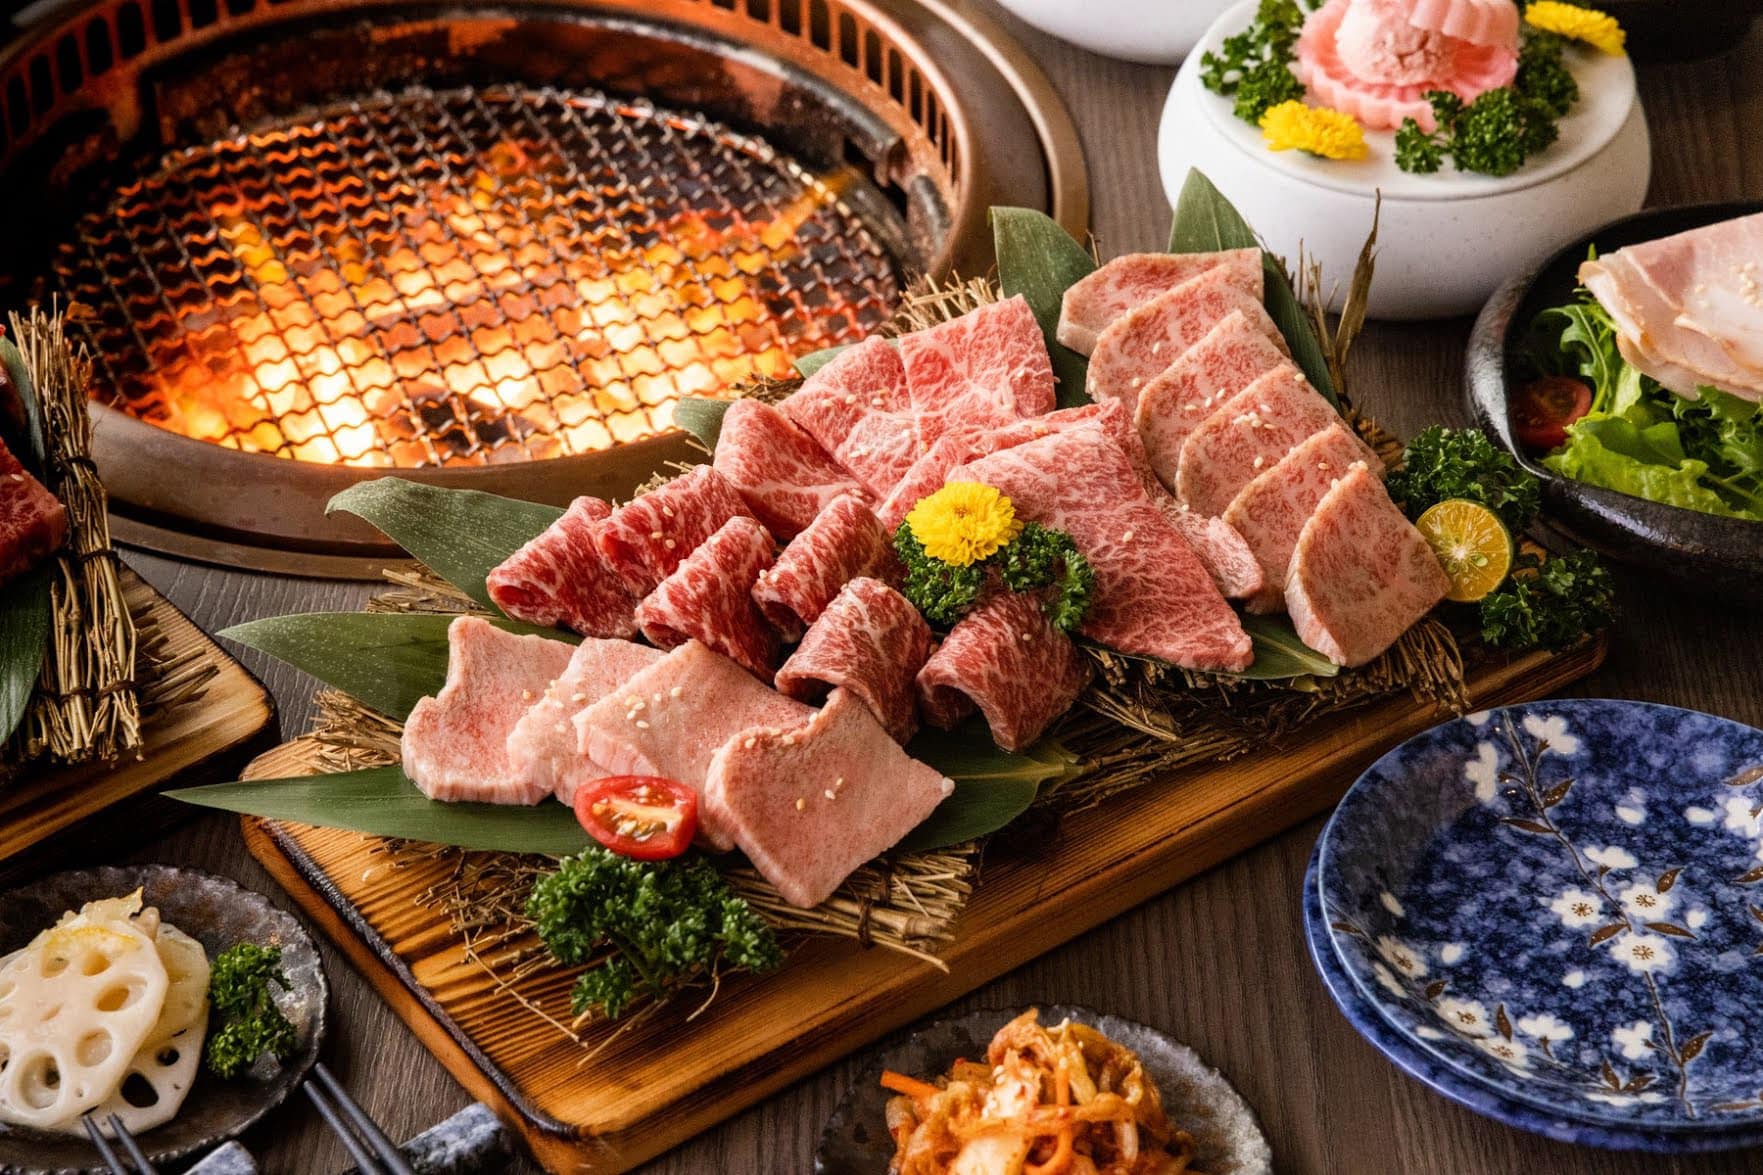 Khám Phá 4 Cách Nướng Thịt Độc Đáo Của Người Nhật - Tinh Hoa Ẩm Thực Nhật  Bản, Nhà Hàng Ussina Aging Beef & Bar